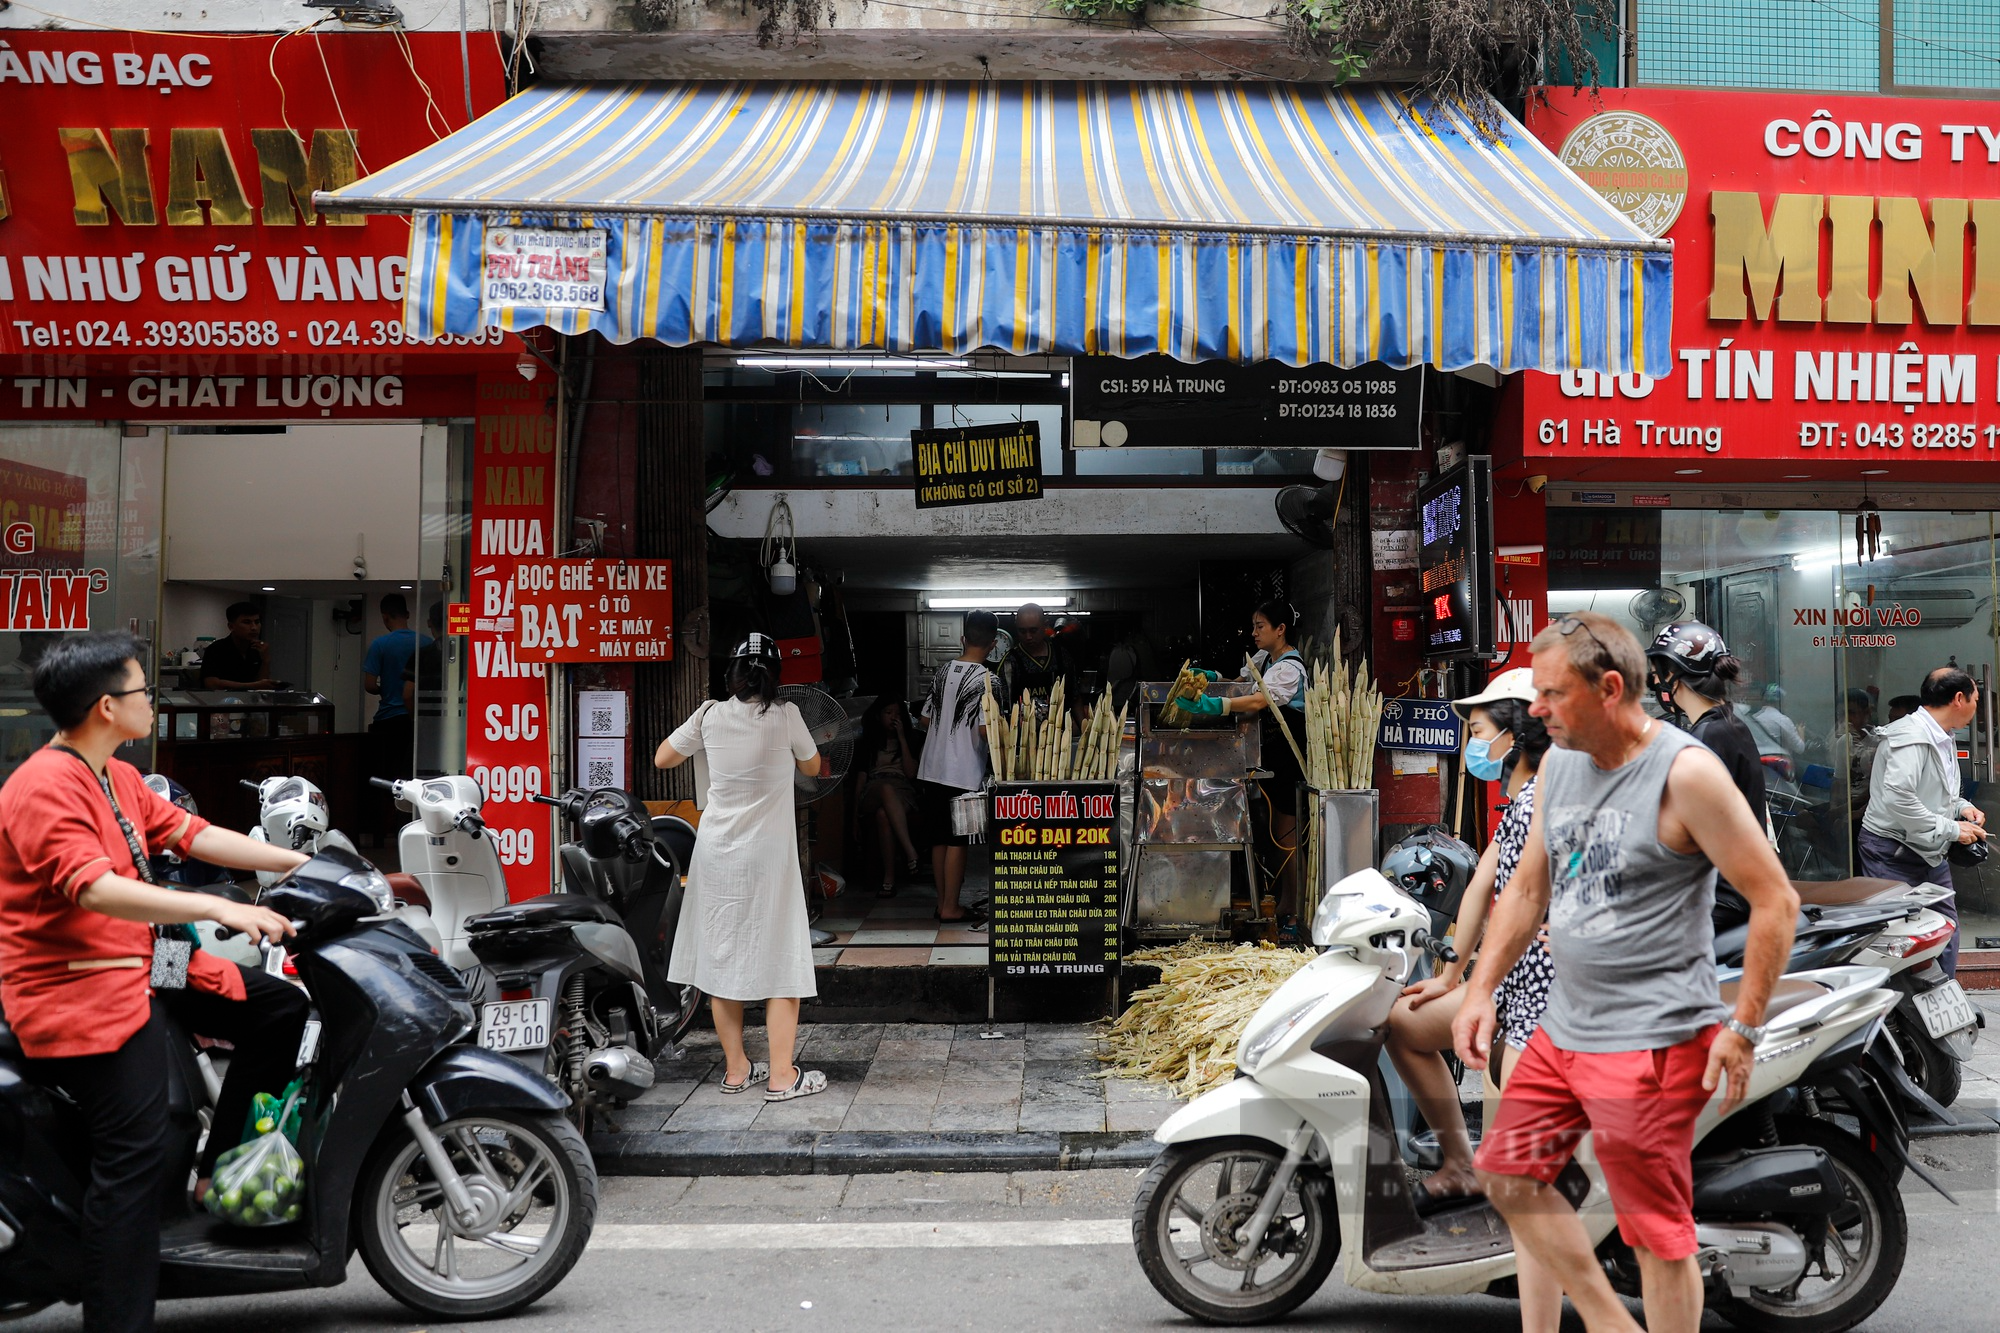 Muôn kiểu chống nắng nóng của người Hà Nội, xuất hiện áo điều hòa giá hơn 1 triệu đồng - Ảnh 9.